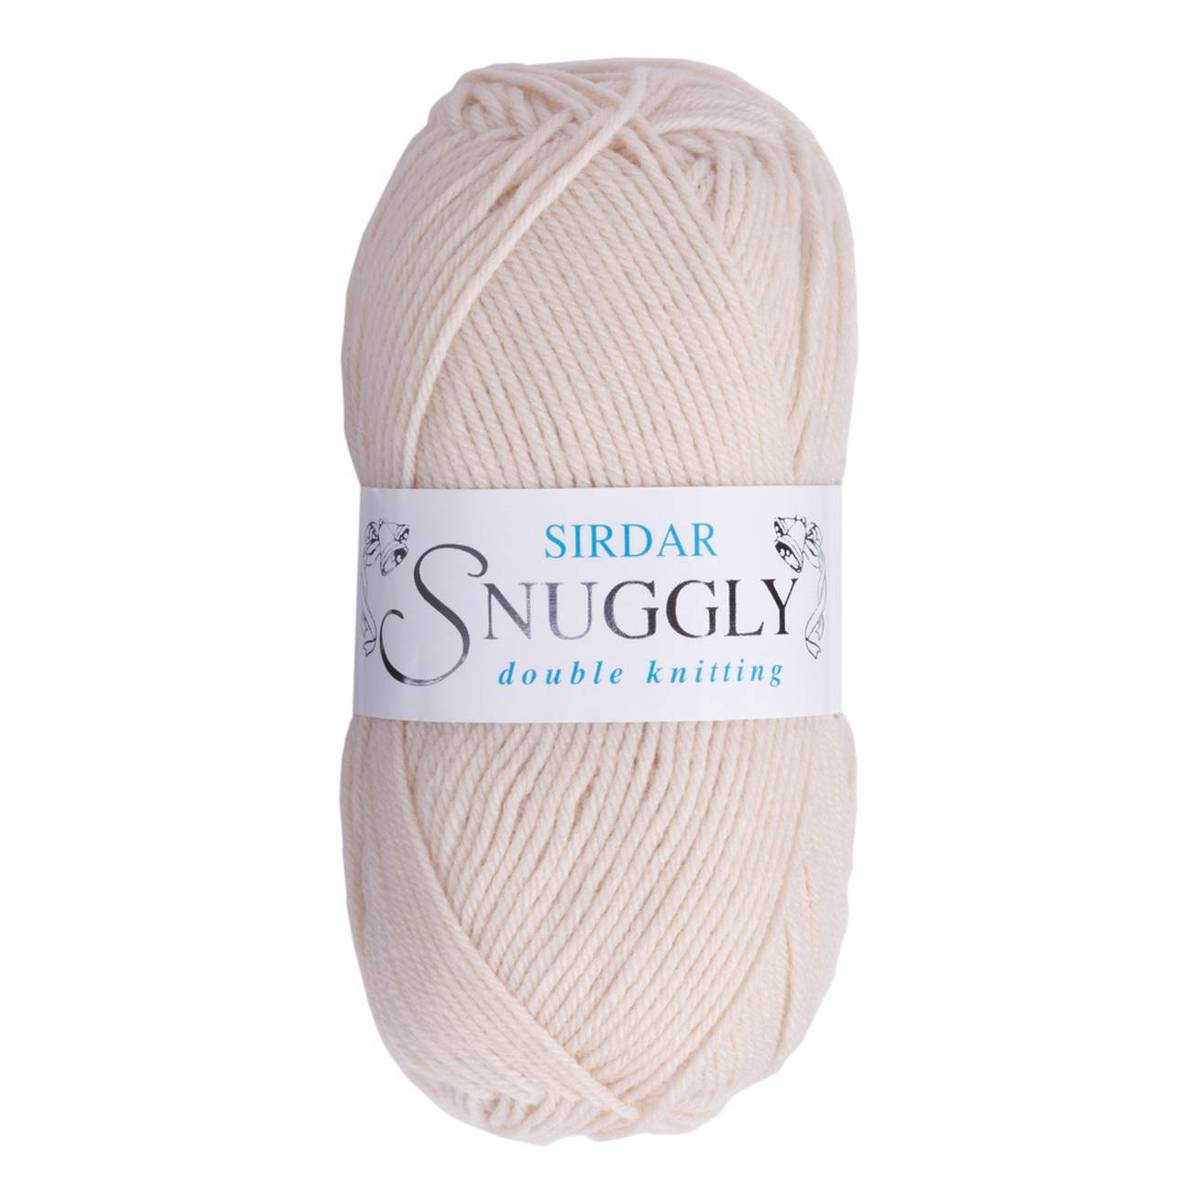 Knitcraft Cream Oh My Fluff Yarn 50g